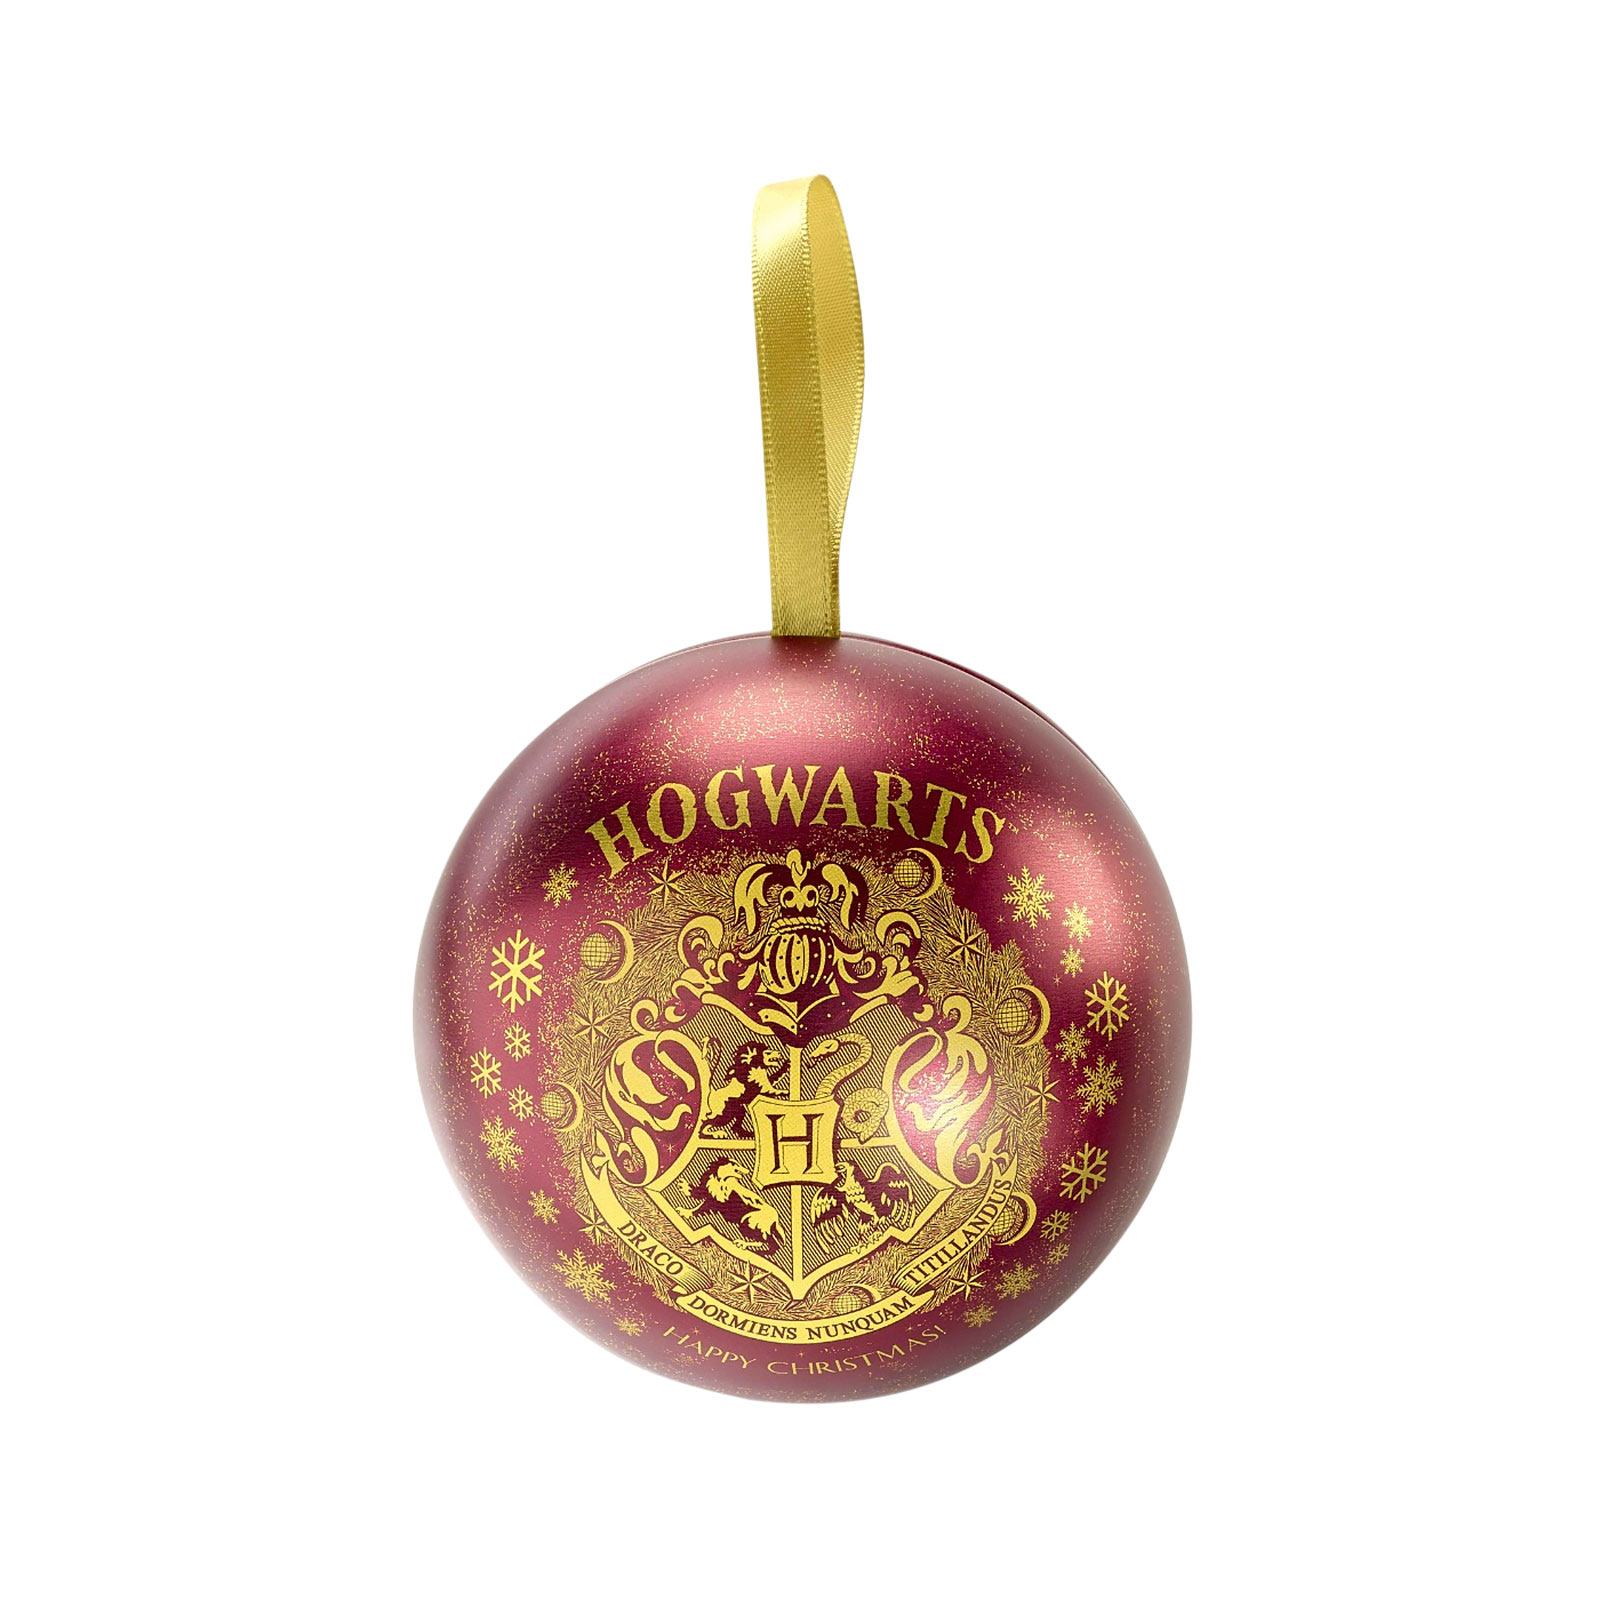 Harry Potter - Boule de Noël de Poudlard avec chaîne